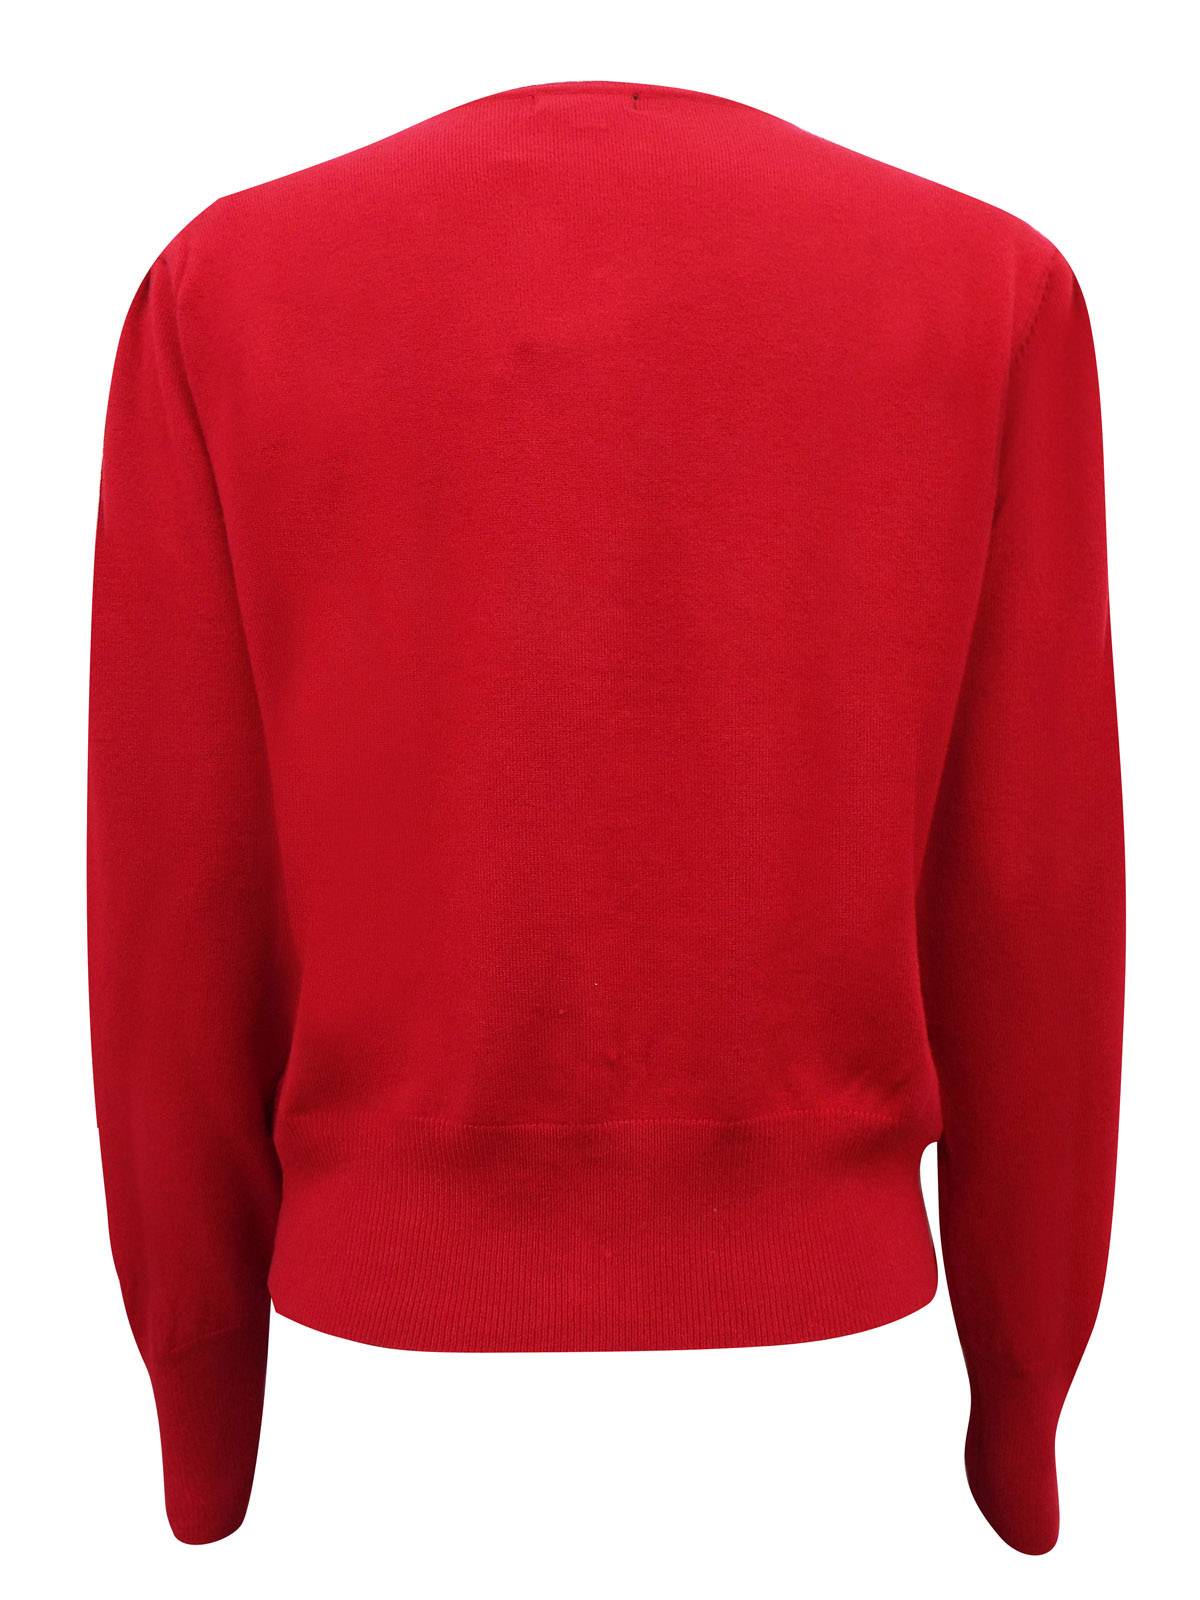 Hepburn - - Hepburn RED Cut-Work Embellished Fine Knit Cardigan - Size ...